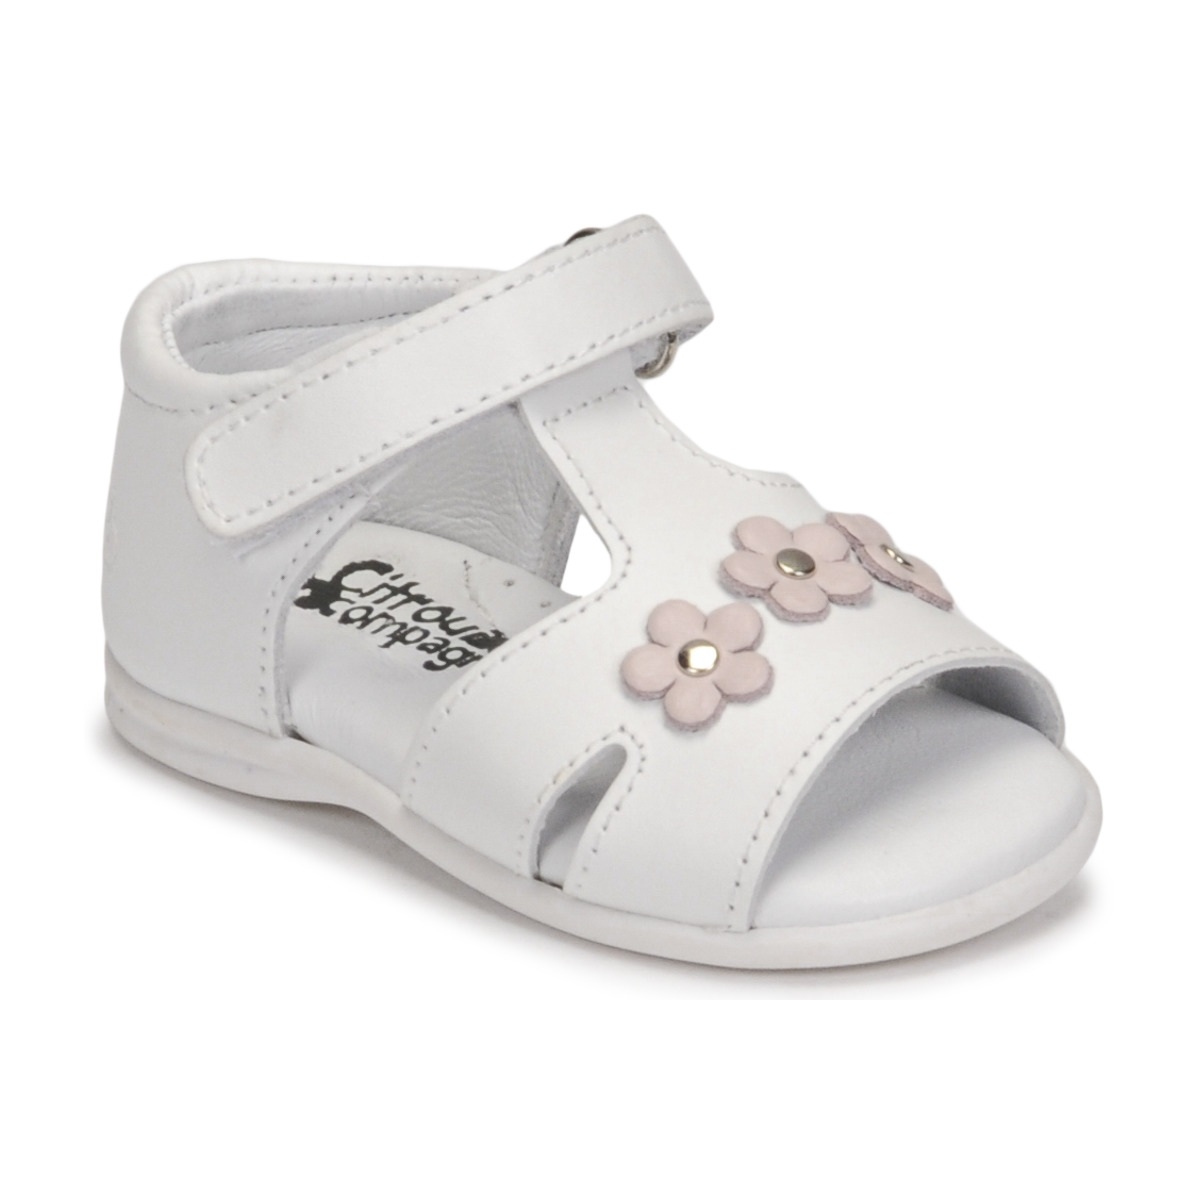 Sapatos Rapariga Sandálias Citrouille et Compagnie NEW 20 Branco